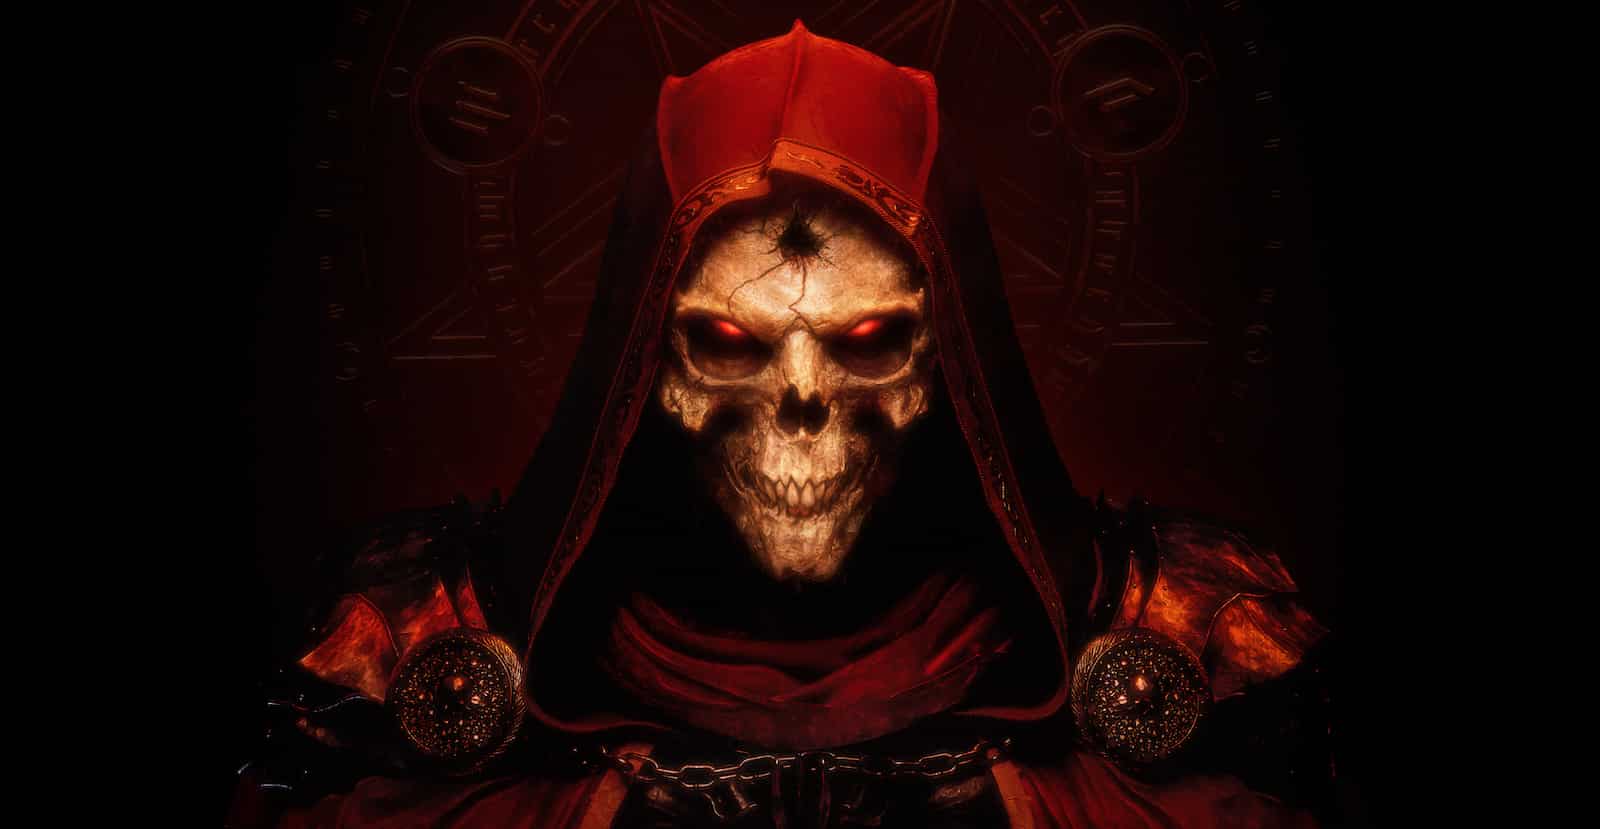 Artwork for Diablo 2 Resurrected's cover